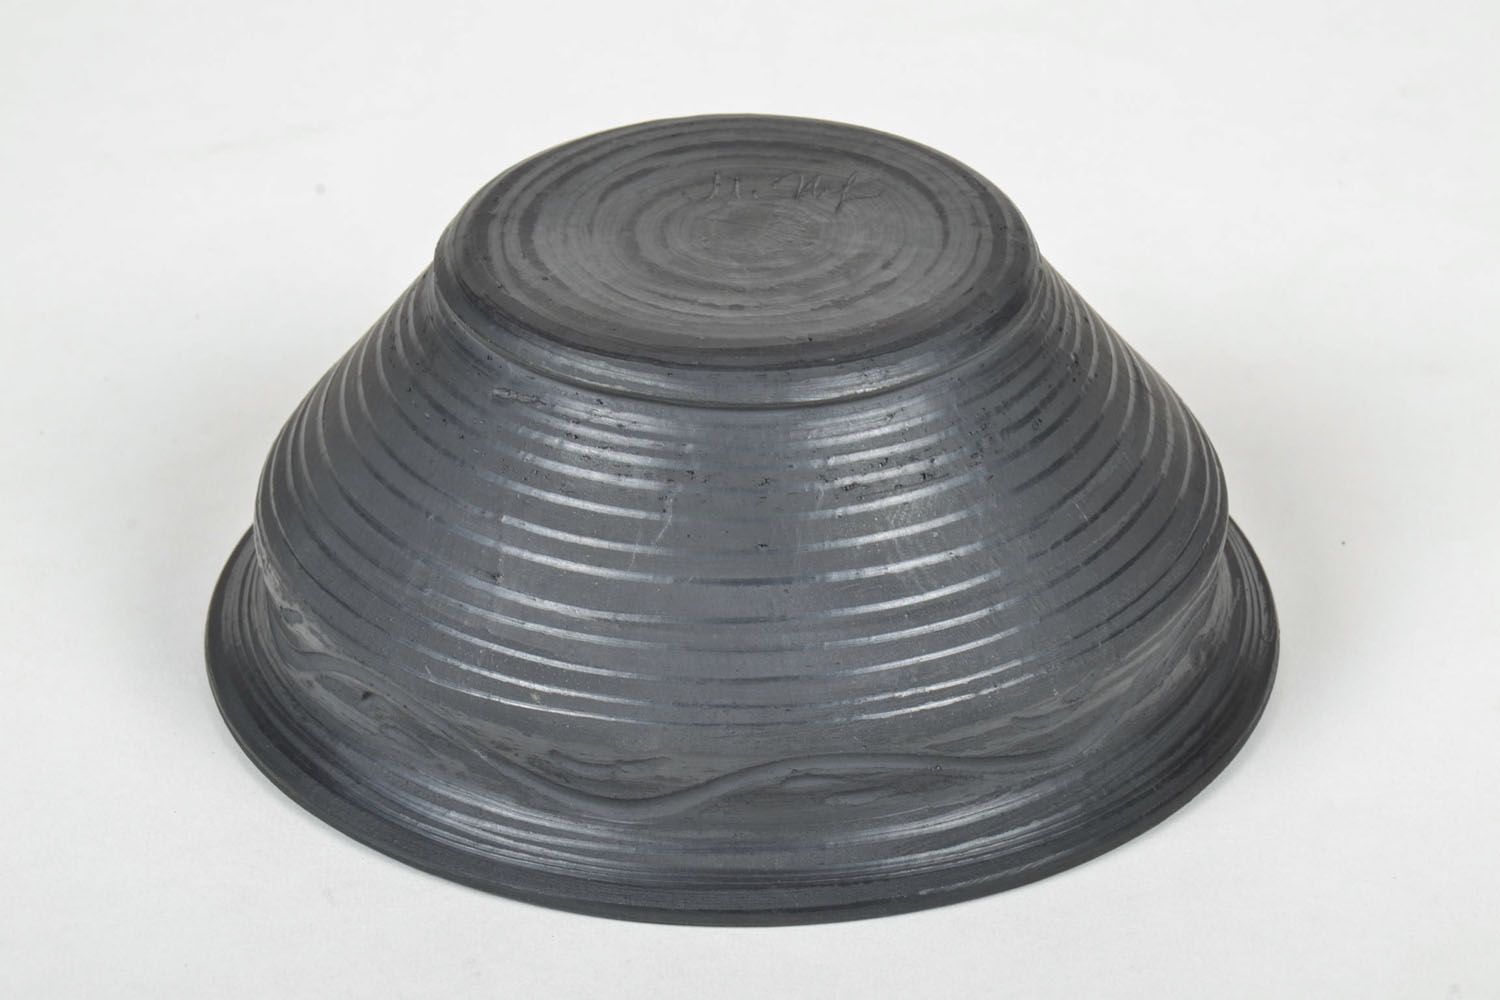 6 3 oz black lead-free ceramic handmade pitch bowl 0,82 lb photo 4